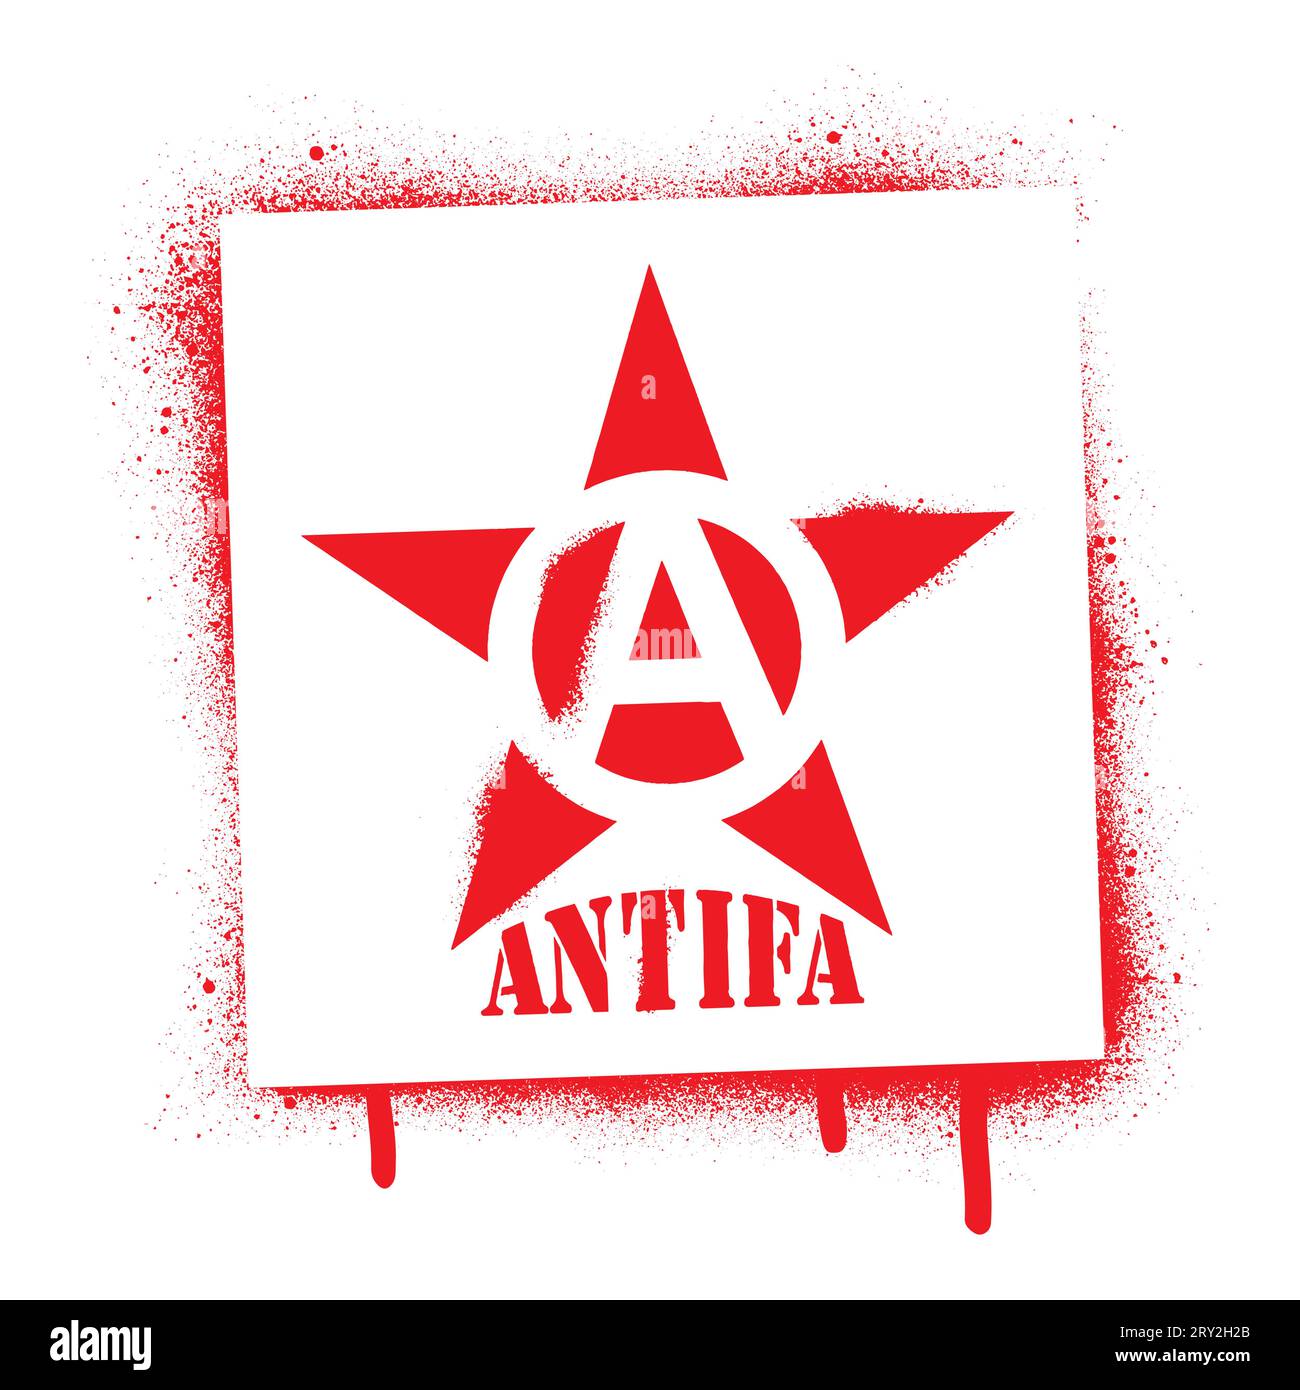 Stencil per graffiti con vernice spray Red Star e citazione ANTIFA. Nome comune per antifascisti militanti e radicali, comunisti, di sinistra e anarchici. Illustrazione Vettoriale